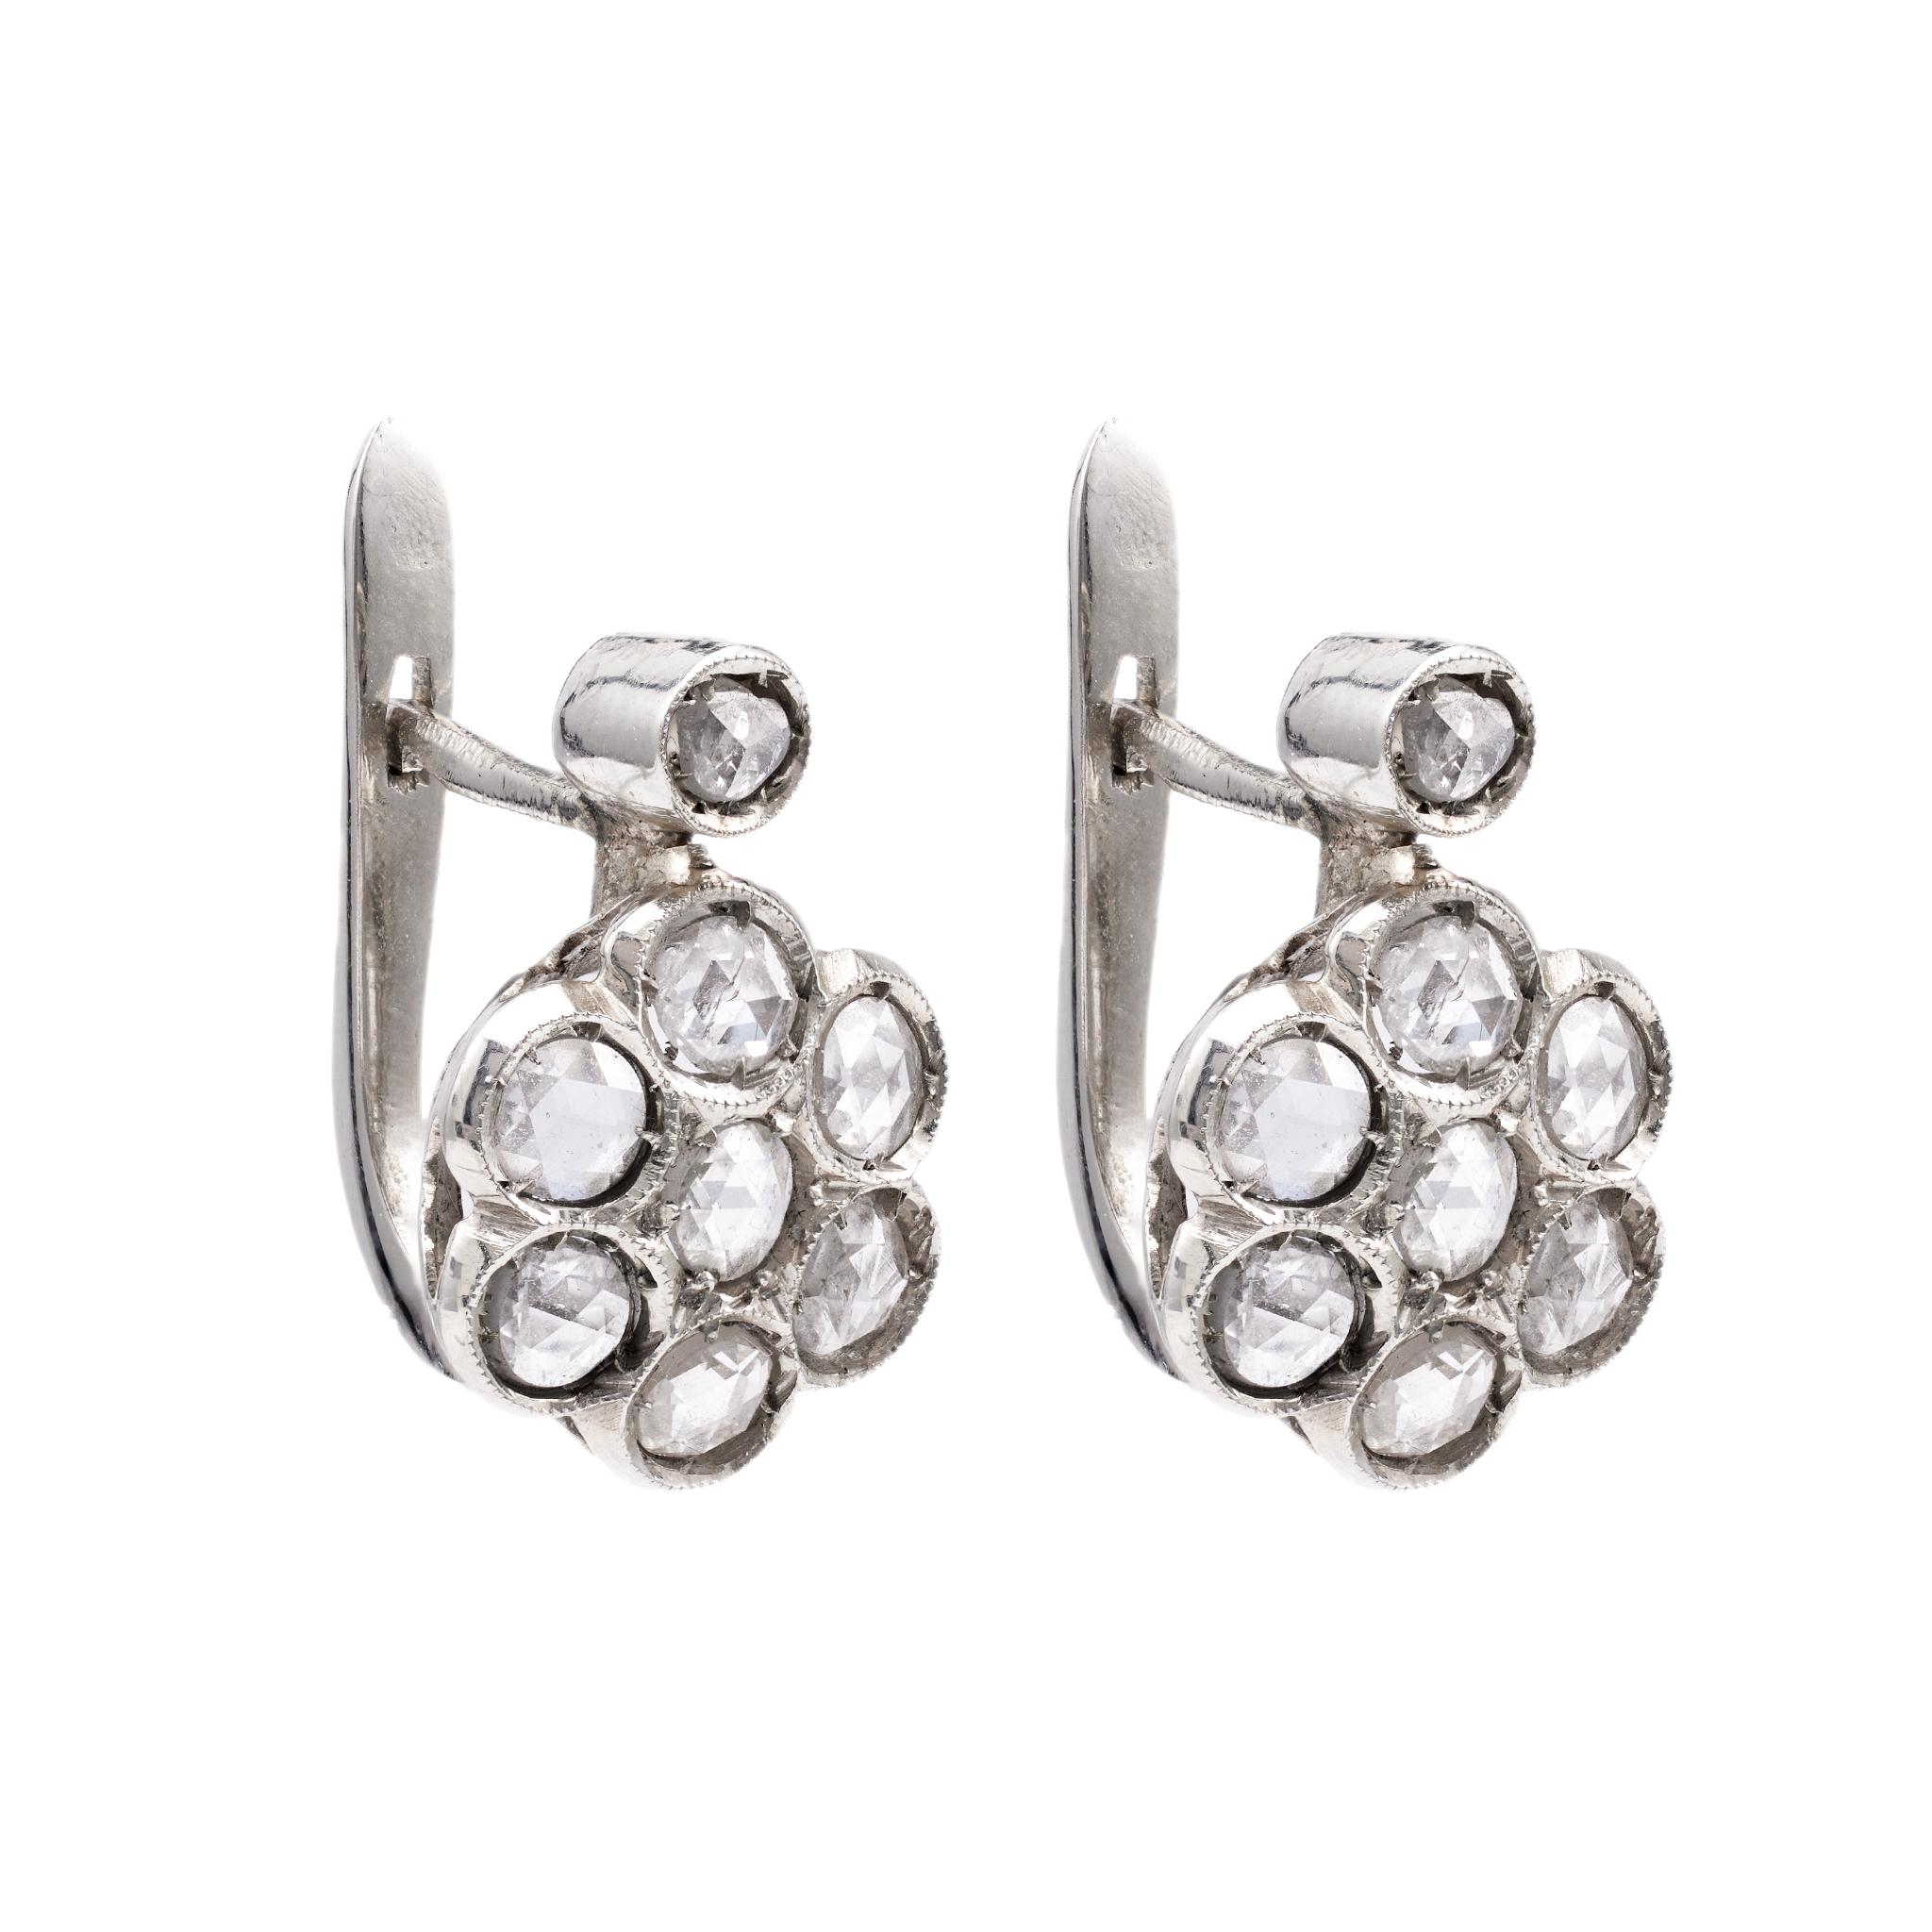 Pair of Retro Rose Cut Diamond 18k White Gold Cluster Earrings For Sale 1